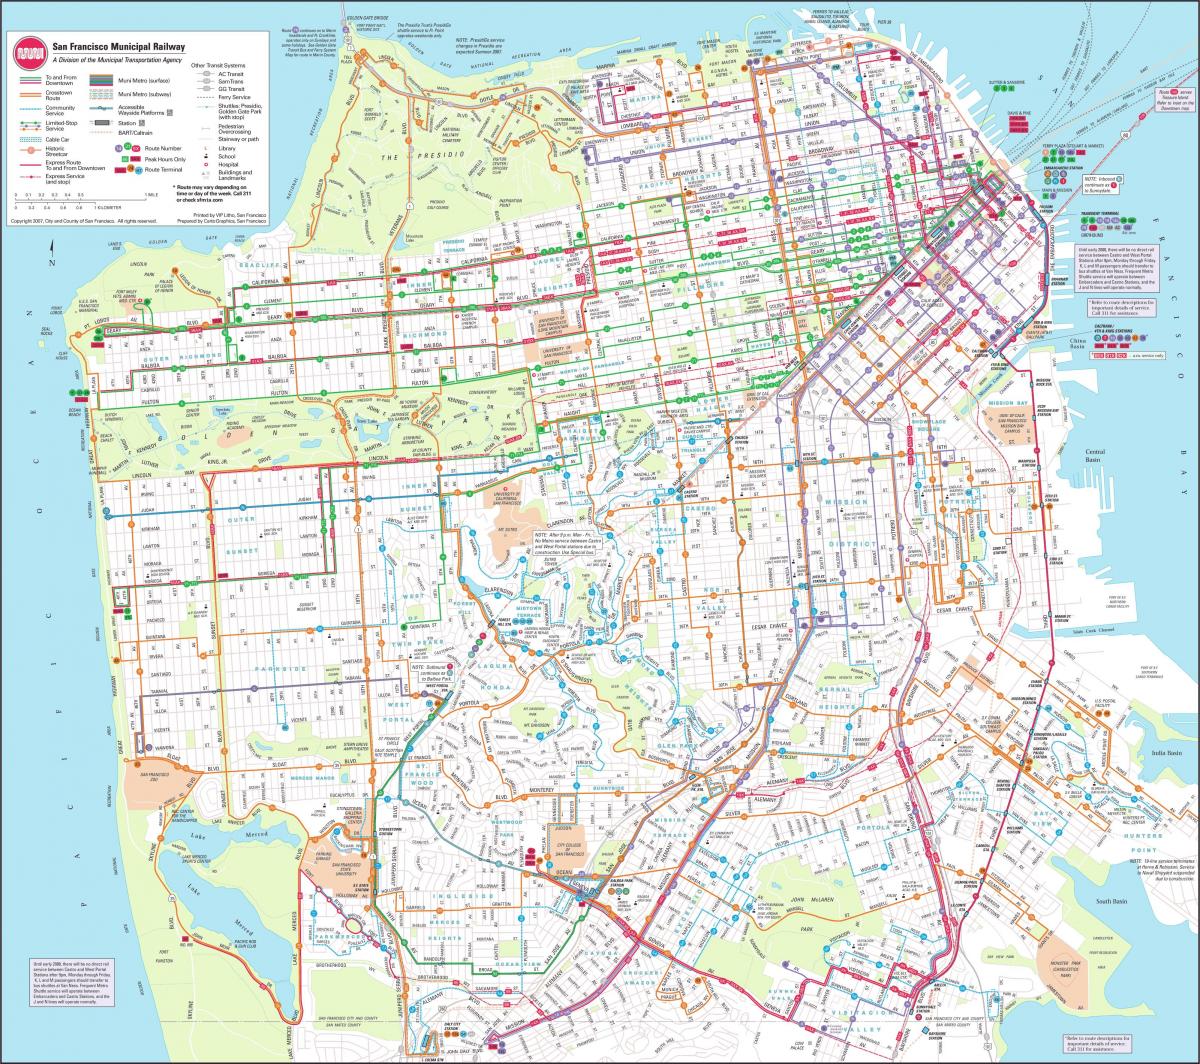 המפה של סן פרנסיסקו municipal railway